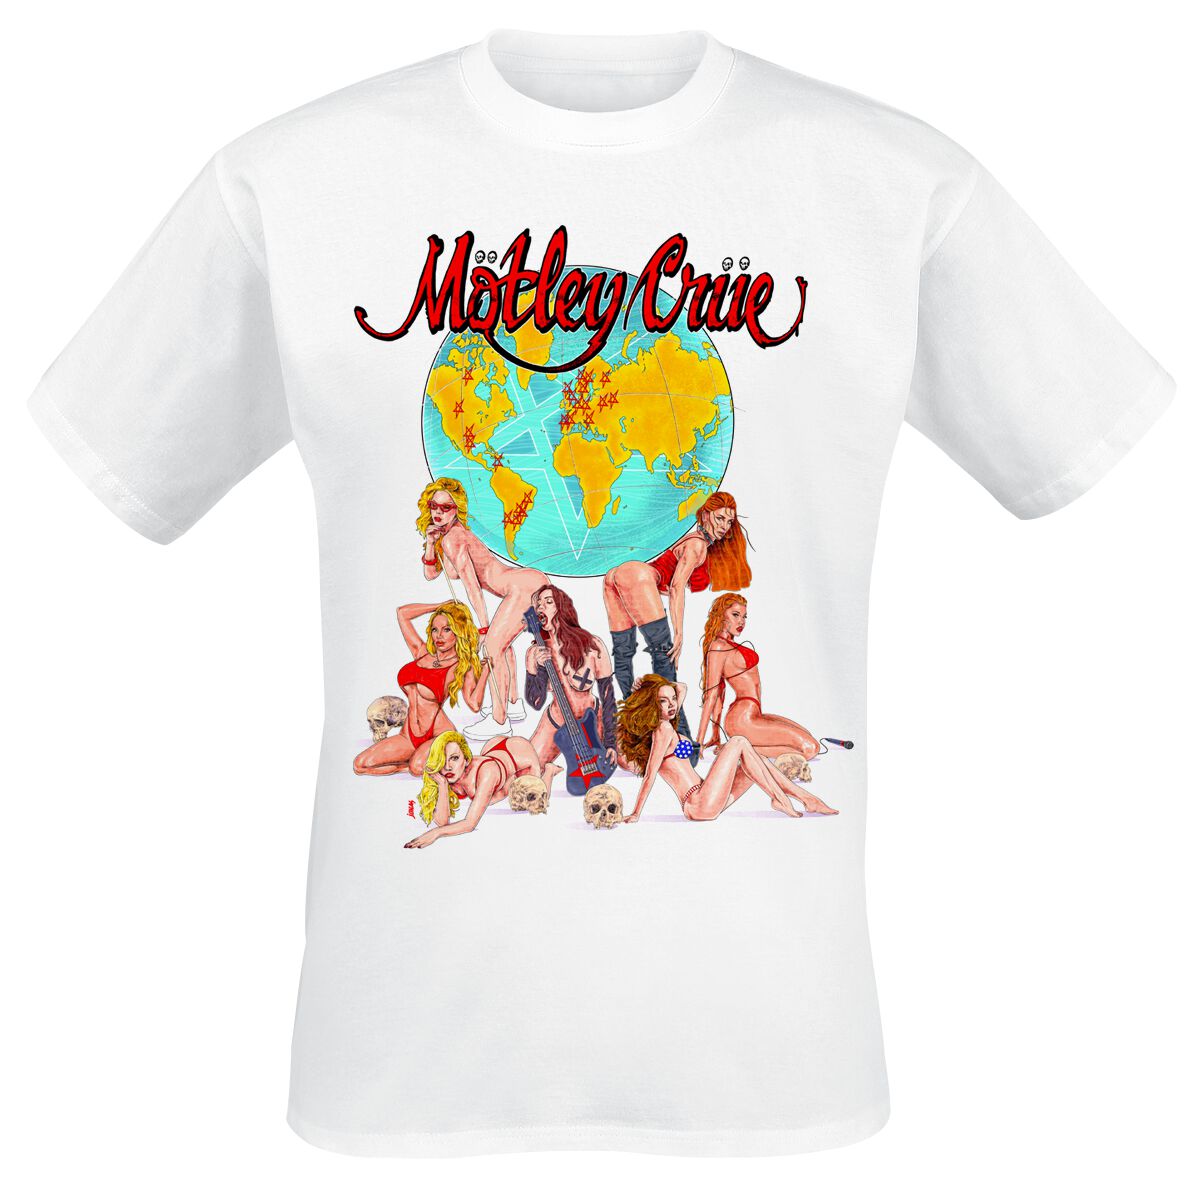 Mötley Crüe T-Shirt - Europe - S bis 4XL - für Männer - Größe 3XL - weiß  - Lizenziertes Merchandise!